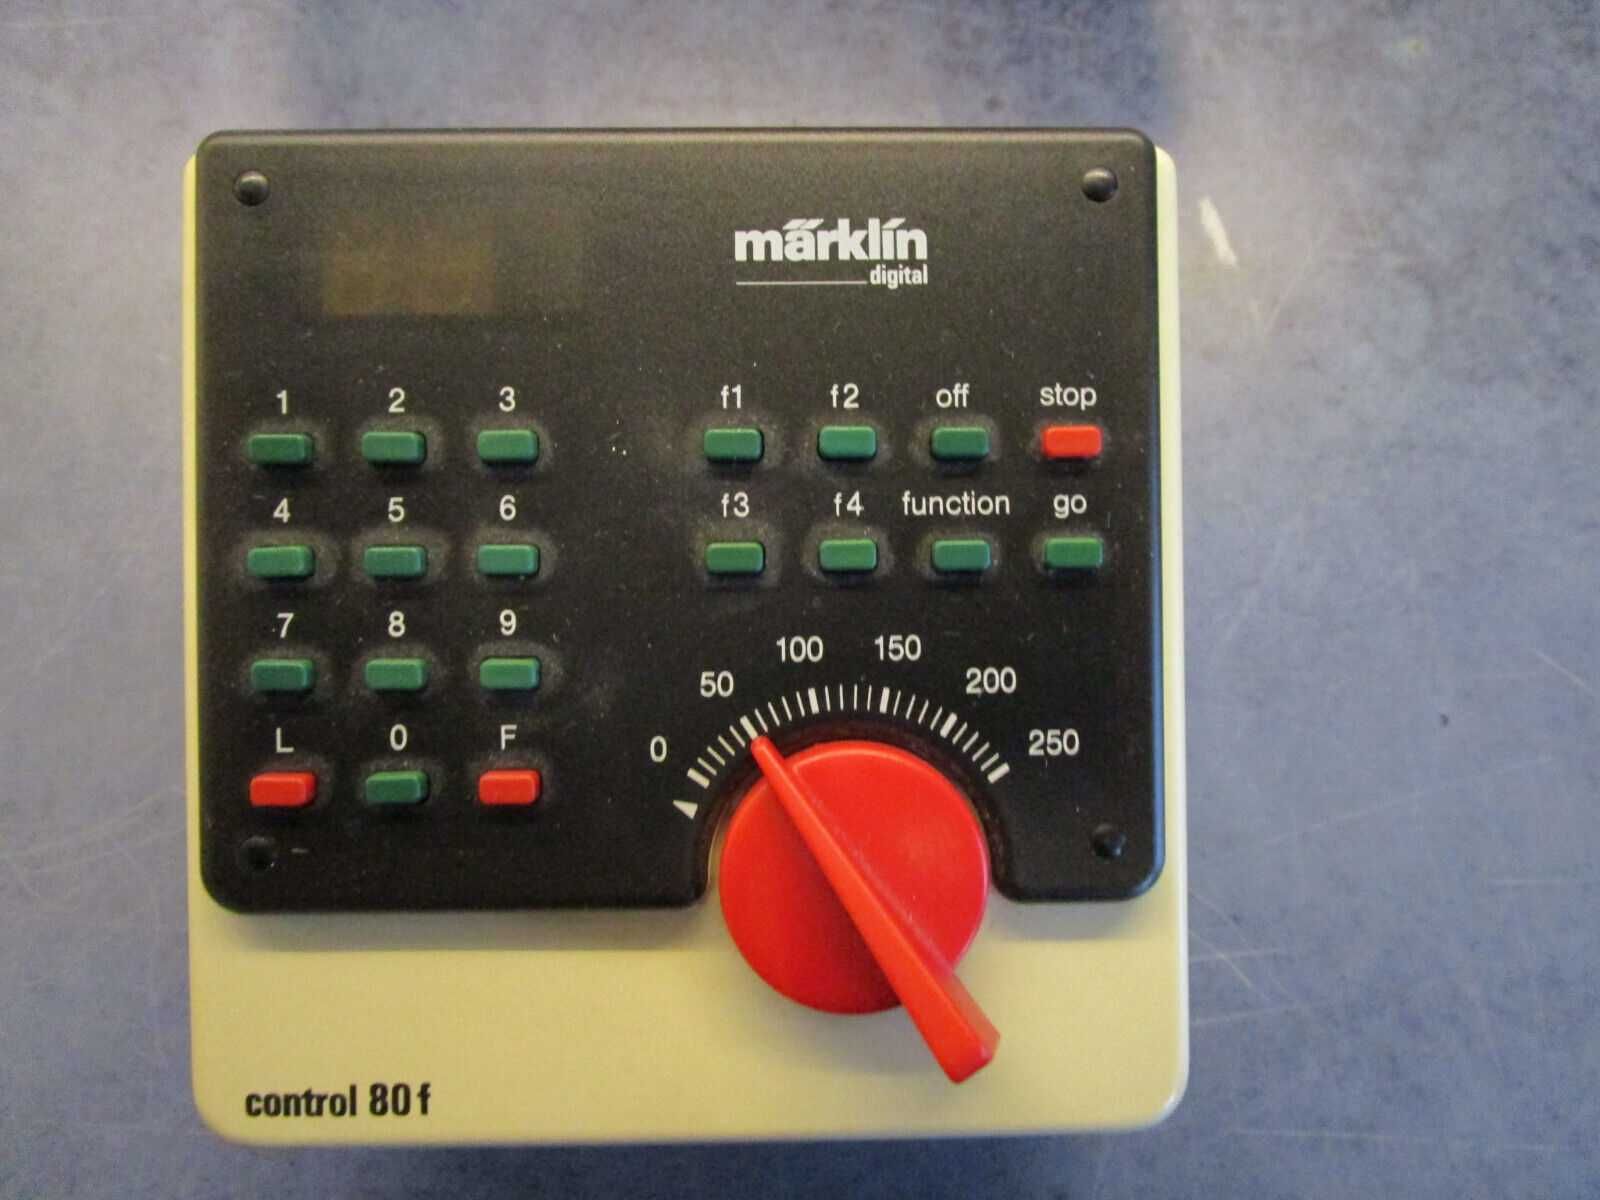 MiniClubMarklin- Marklin 6020 Sistema de controlo digital